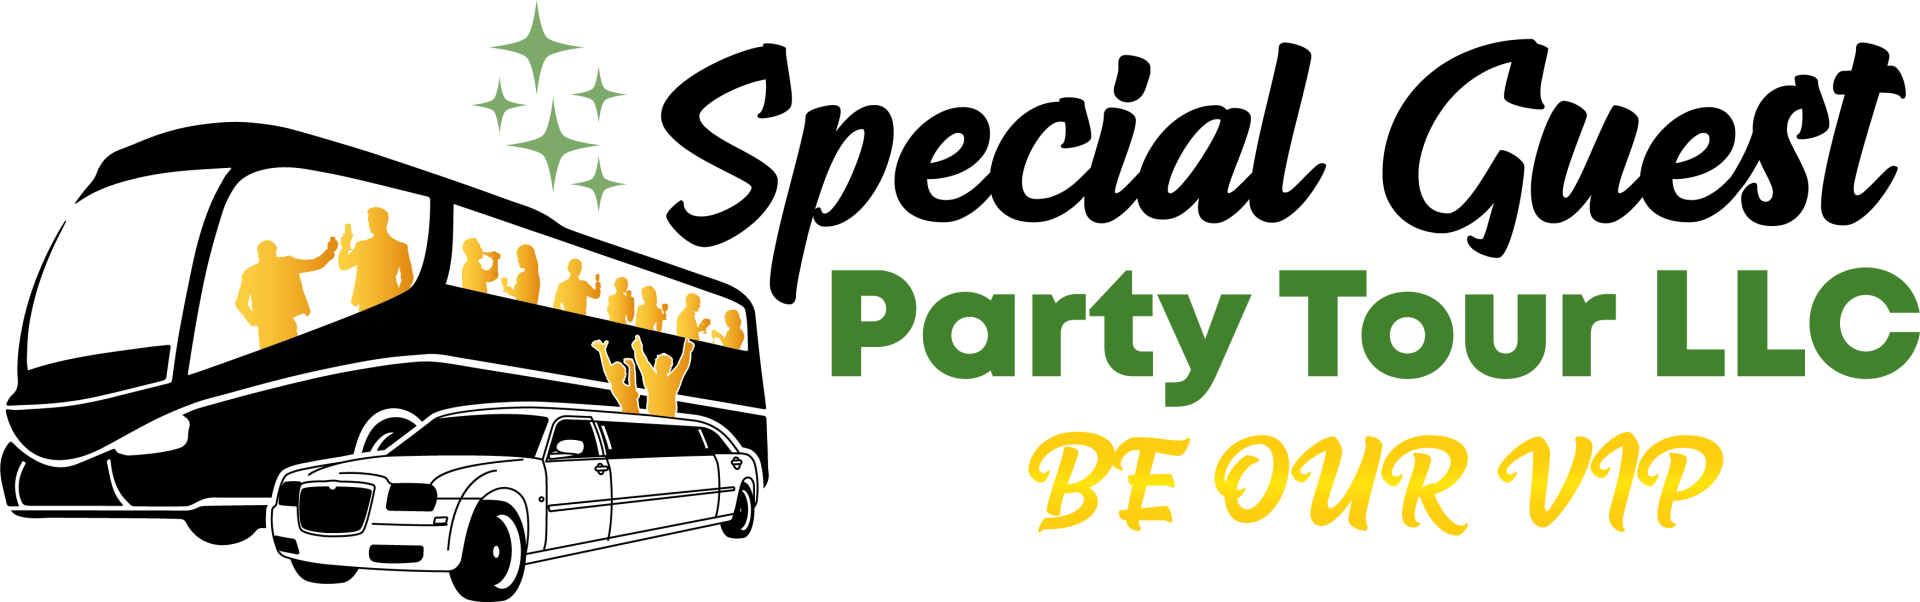 Special Guest Limousine & Party Tours LLC